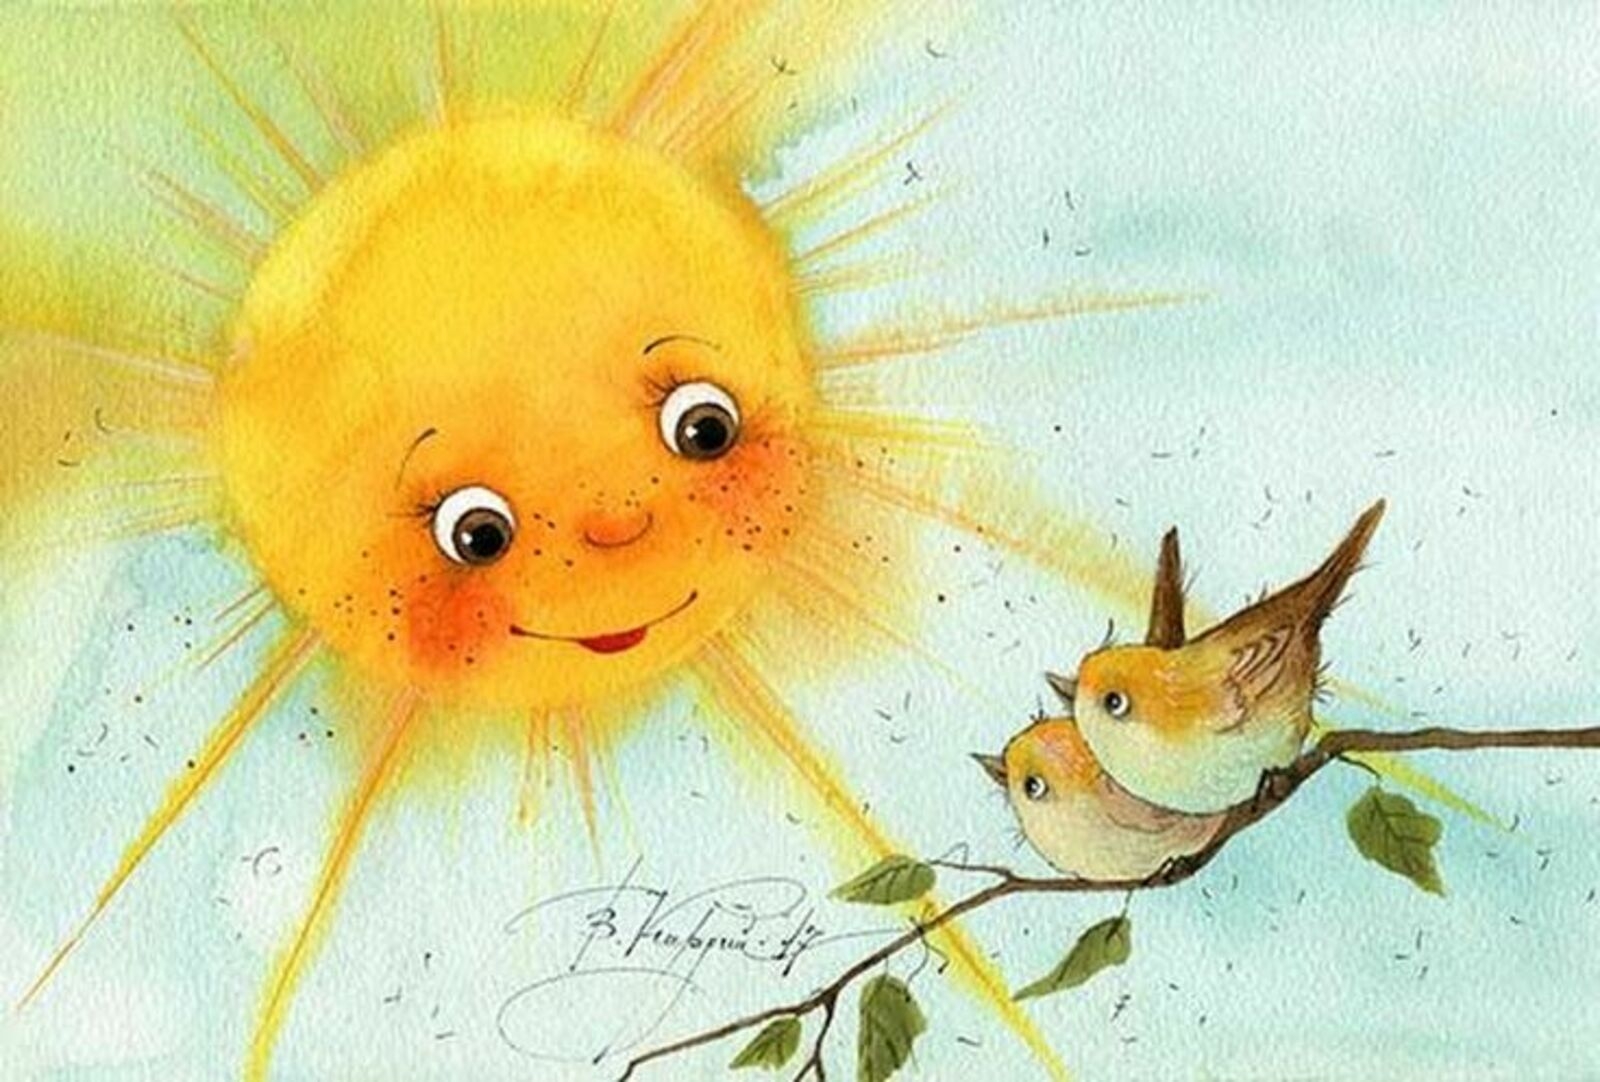 Доброе весеннее утро солнышко. Солнечные акварели Виктории Кирдий.